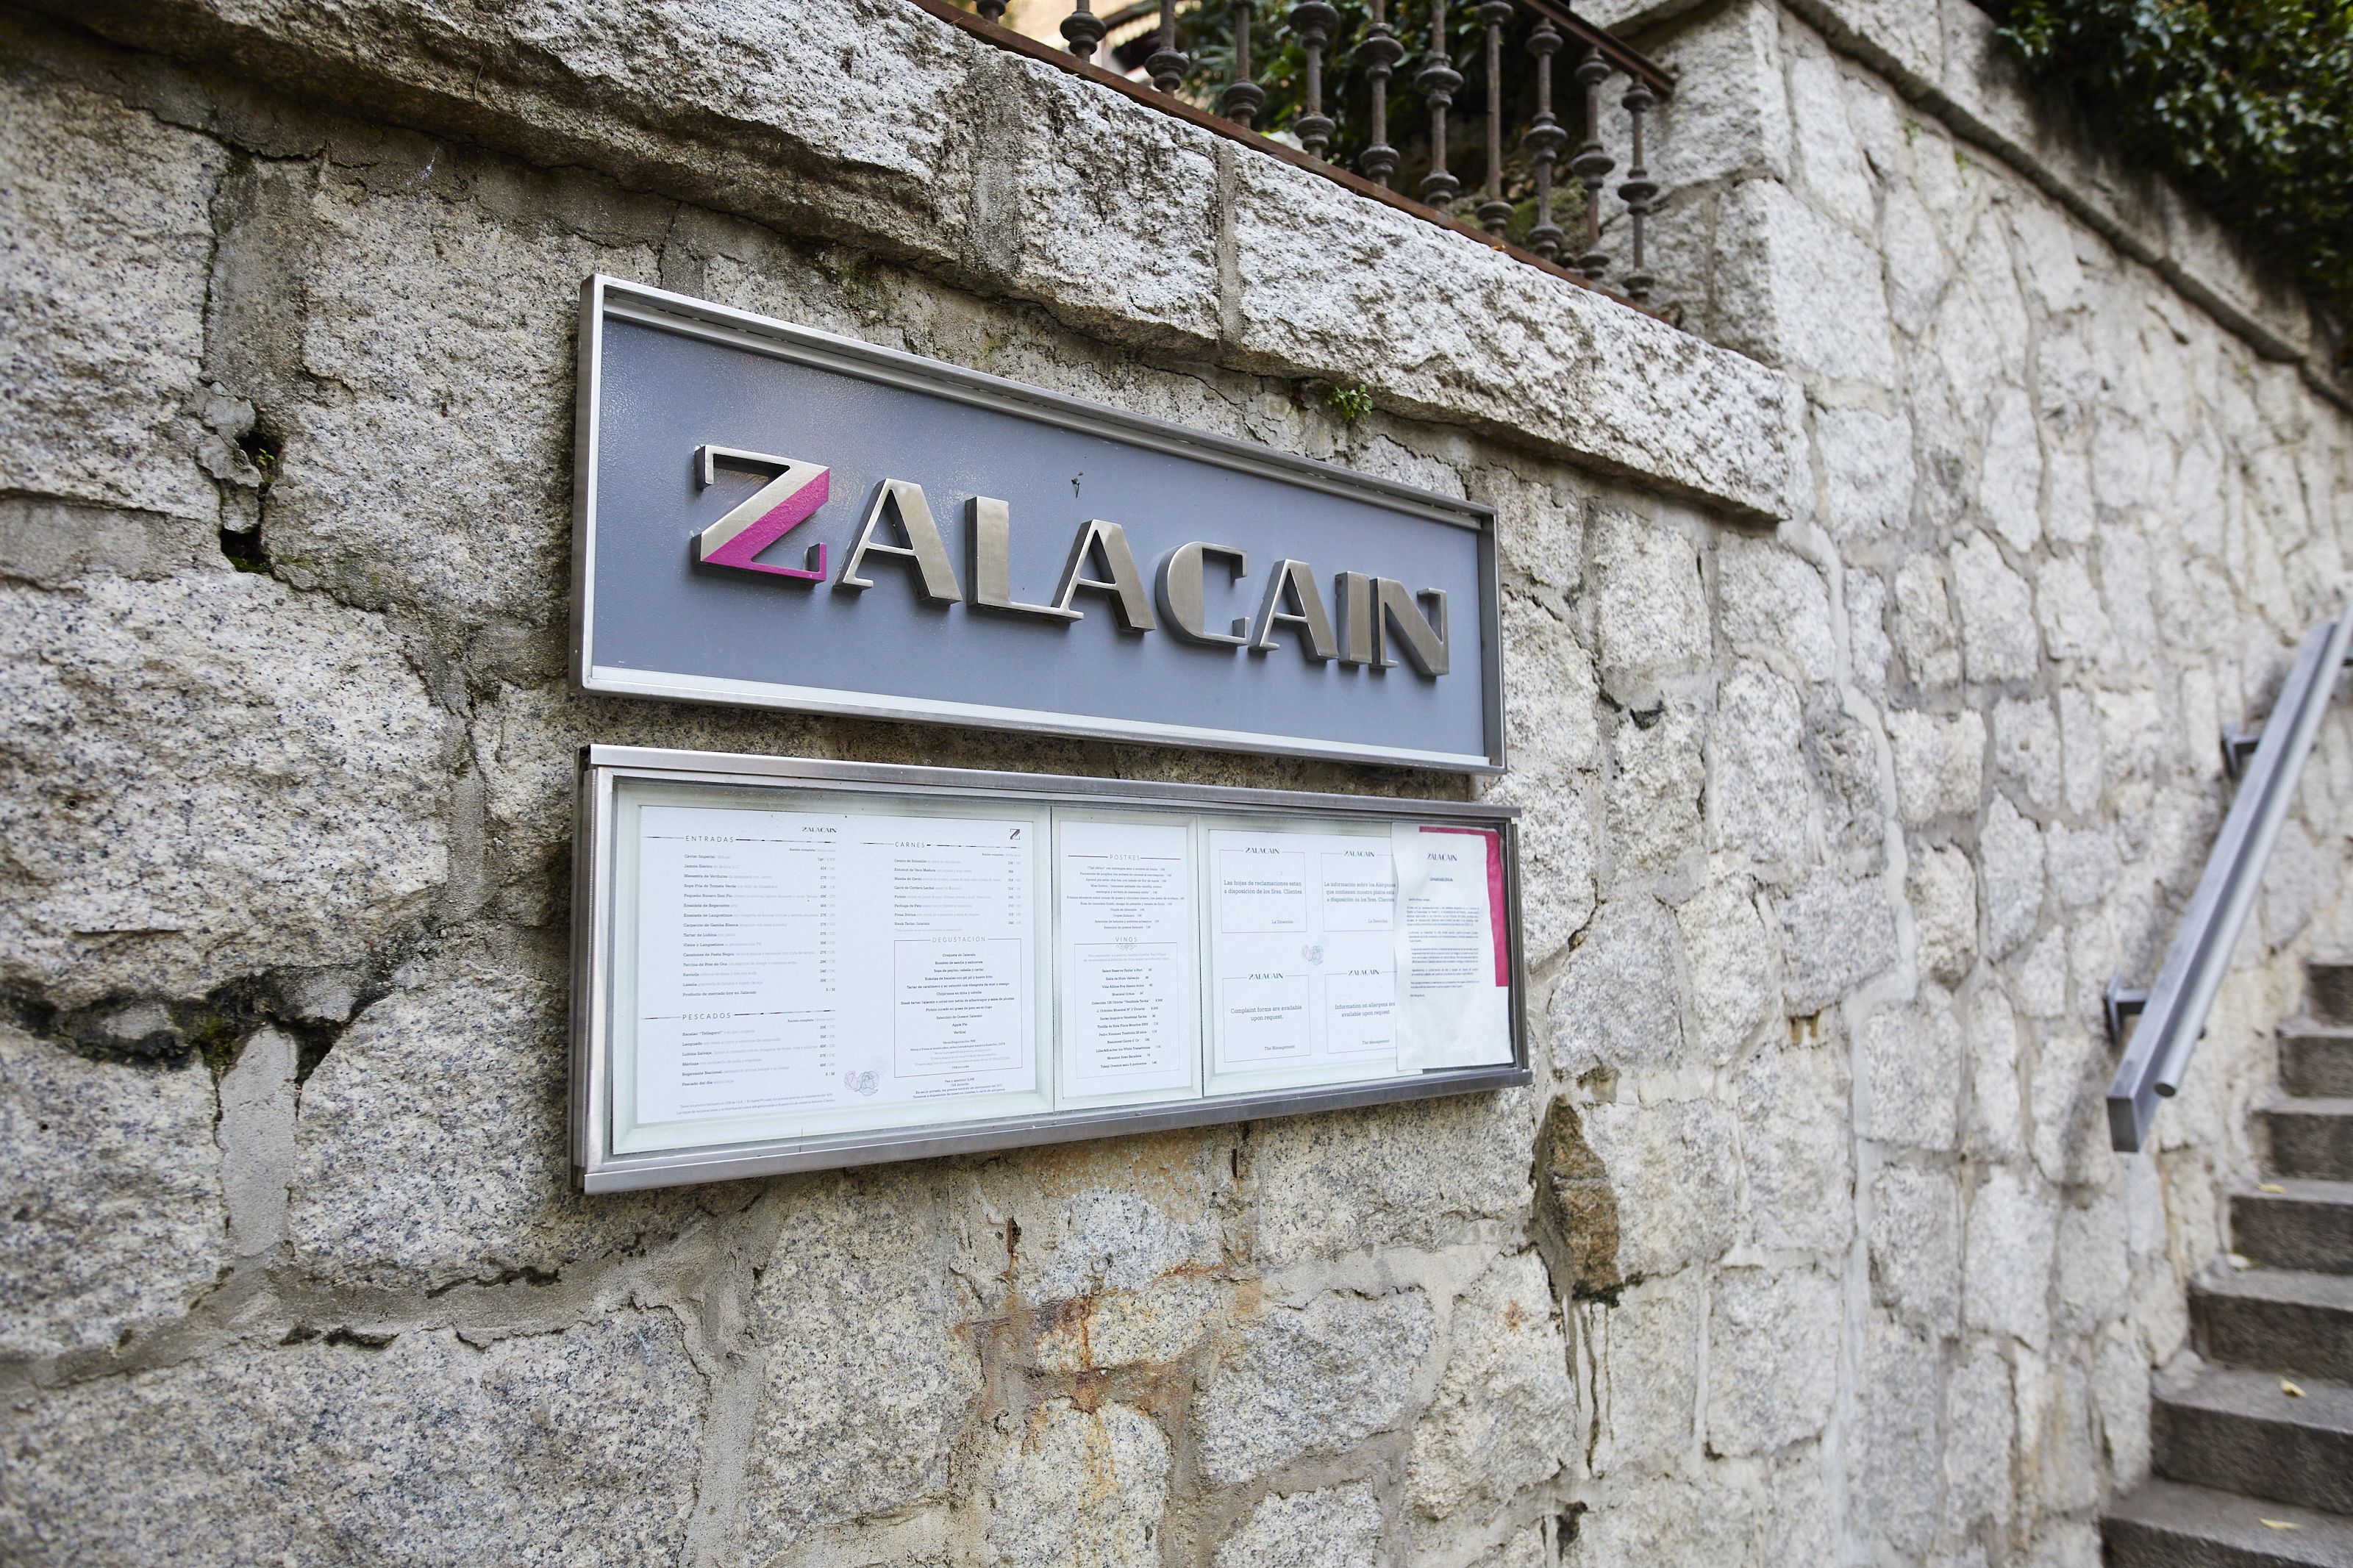 El restaurante Zalacaín celebra su 50 aniversario como uno de los templos gastronómicos de Madrid. Foto: Europa Press